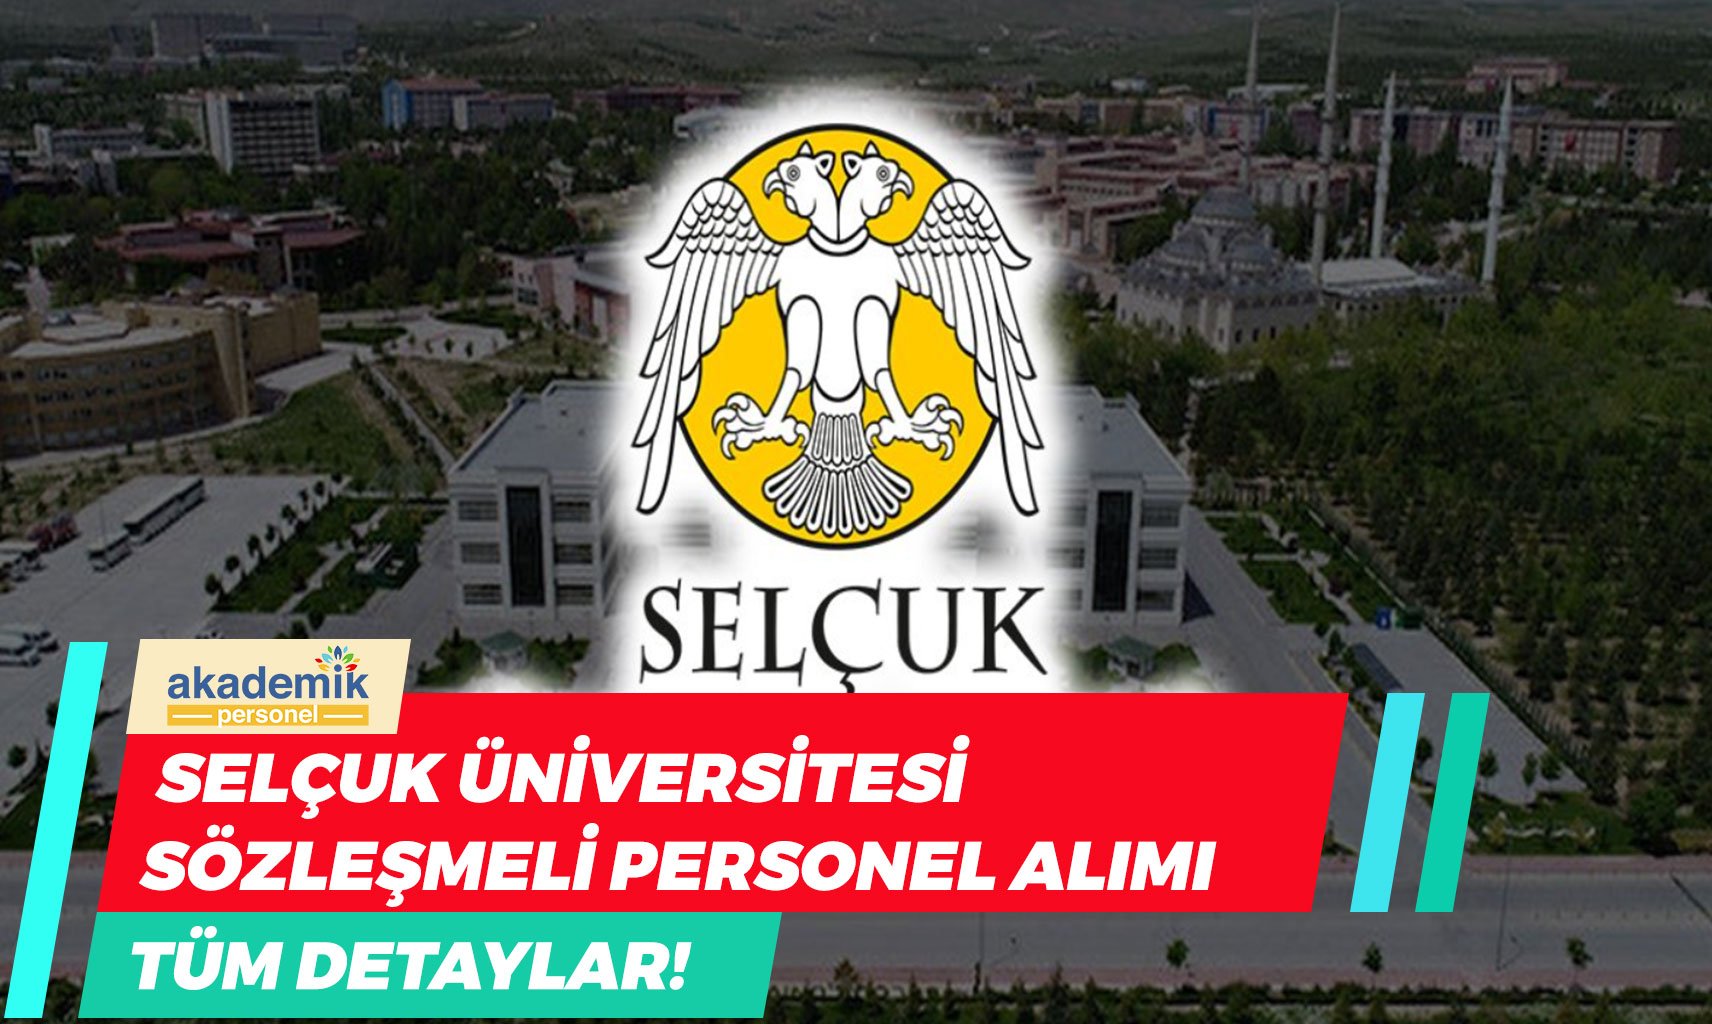 Selçuk Üniversitesi Sözleşmeli Personel Alımı: 87 Kişi!